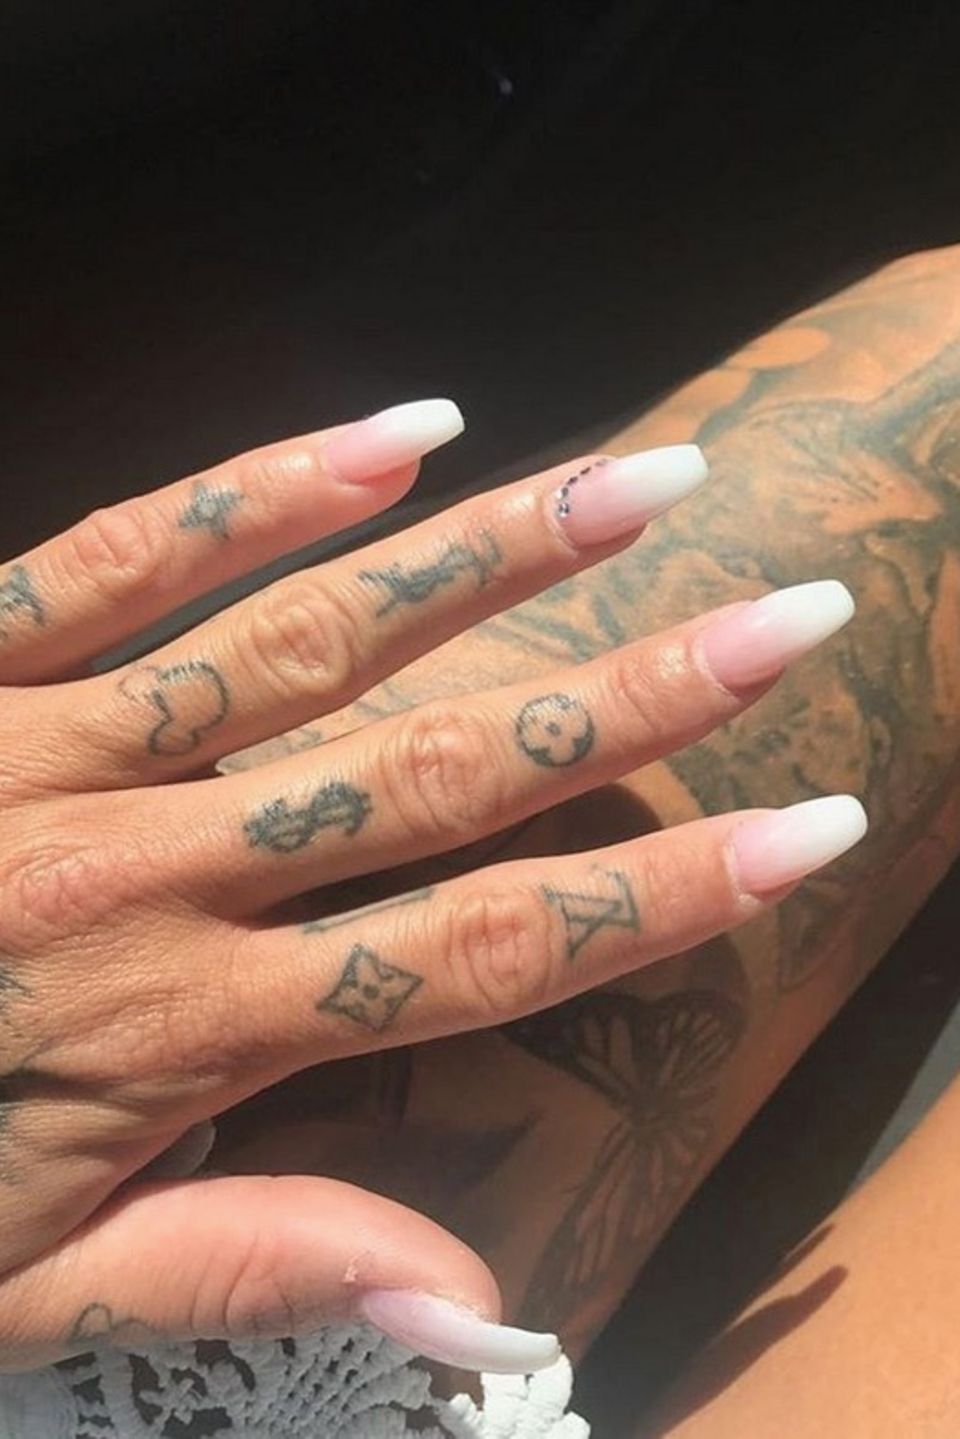 Welcher Star könnte diese Tattoos von Marken wie Chanel und Co. an den Fingern haben? Richtig, es ist Gina Lisa Lohfink. 